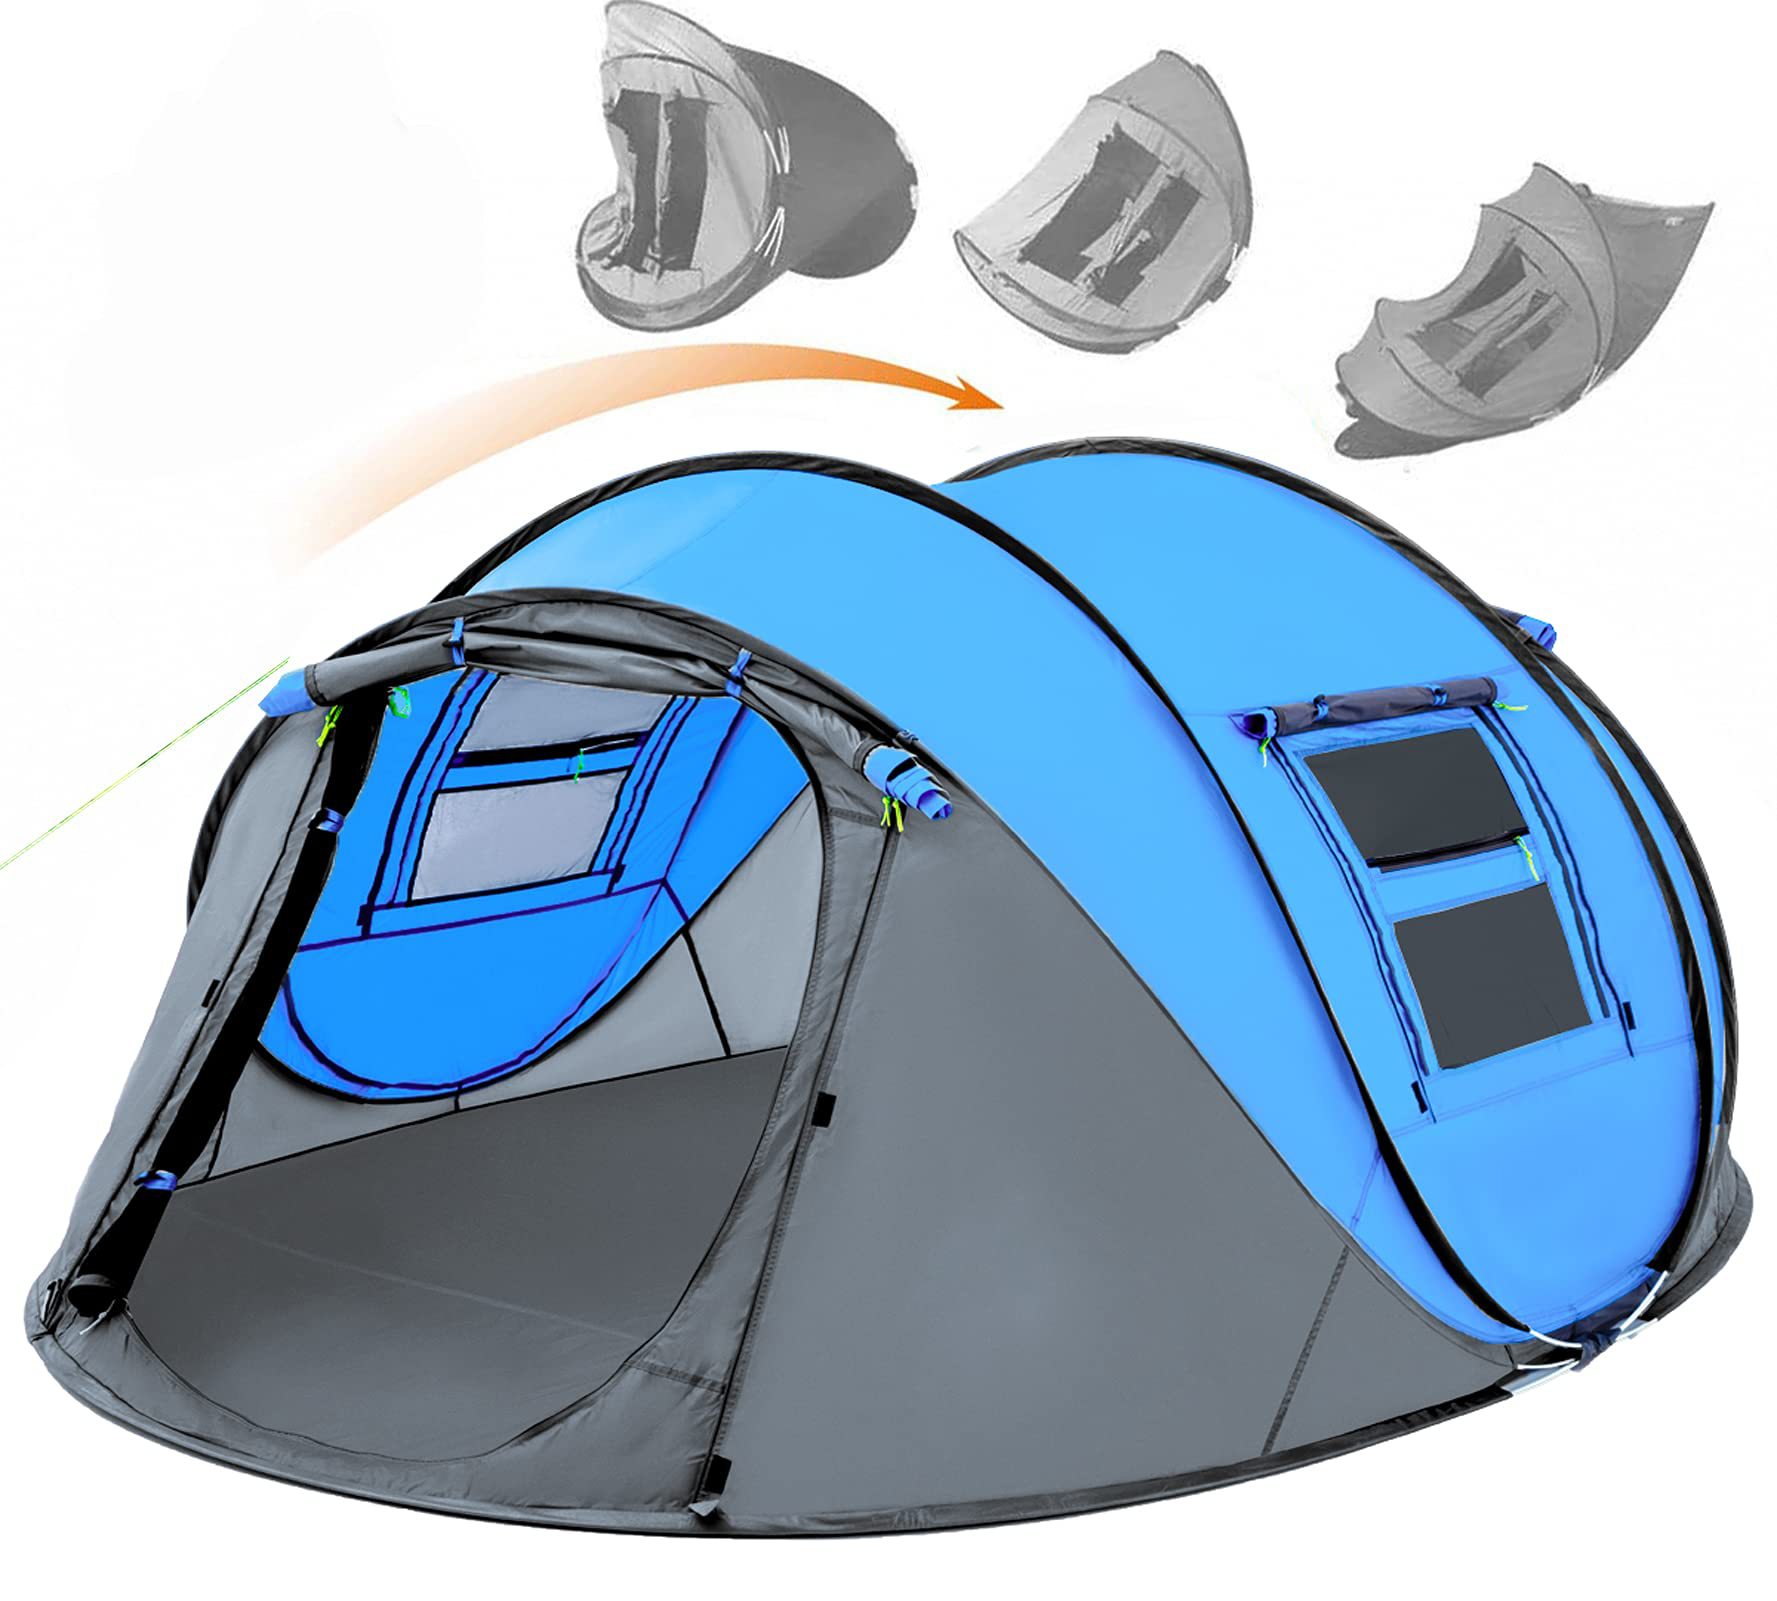 Легкая всплывающая палатка для 4 человек, водонепроницаемая автоматическая установка, 2 двери, мгновенные семейные палатки для кемпинга, пеших прогулок и путешествий